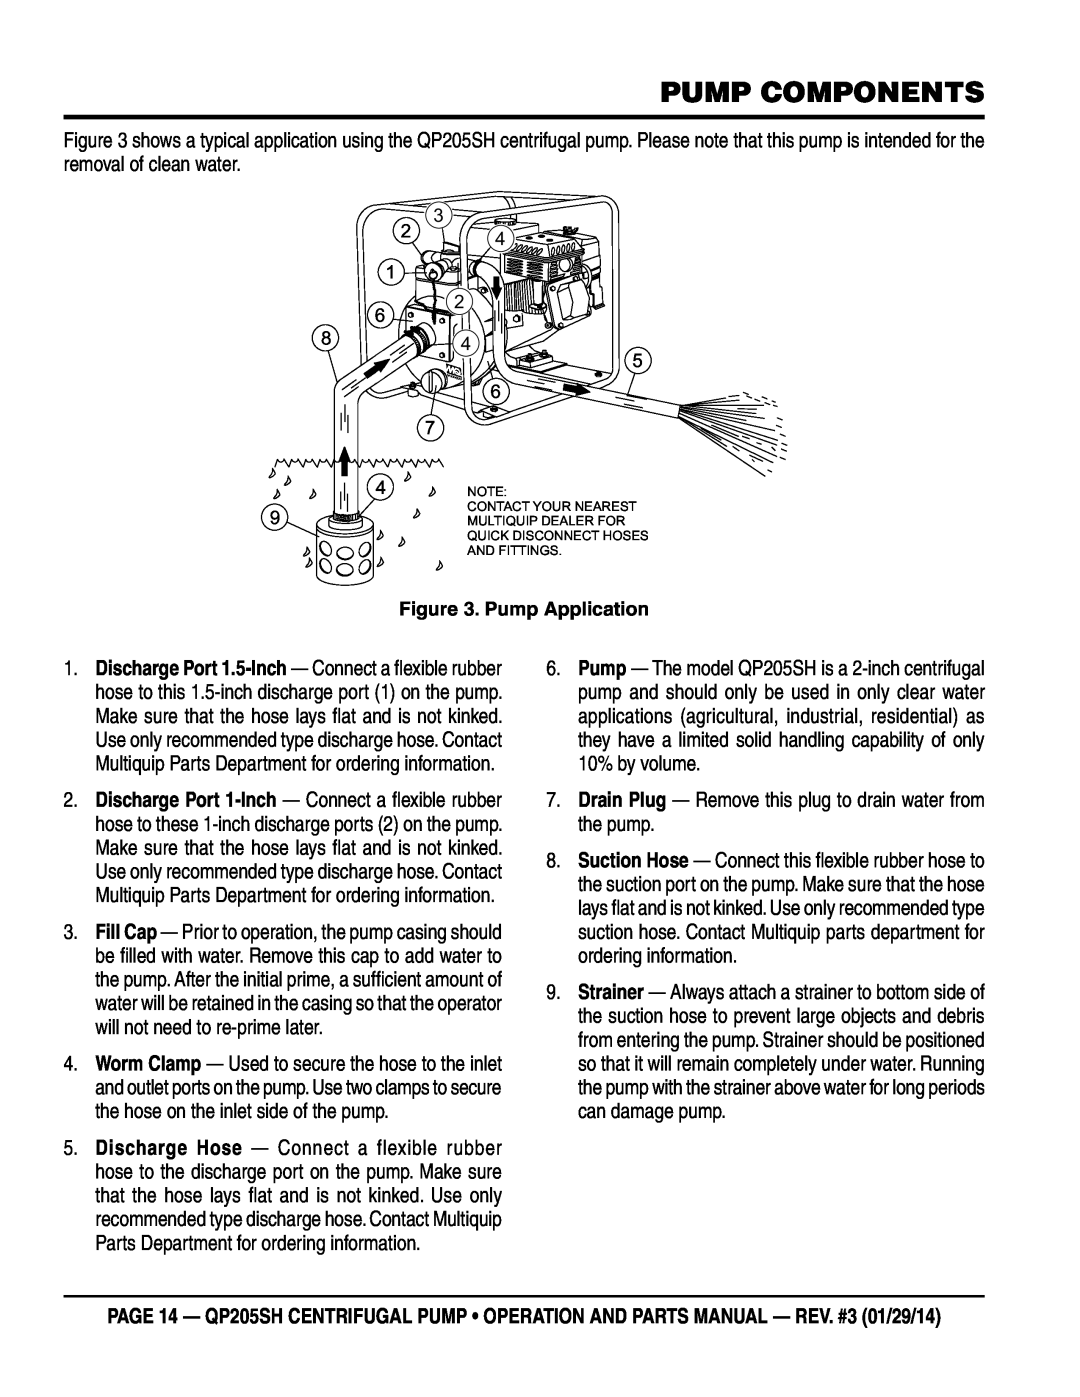 Honda Power Equipment QP205SH manual Pump Components, Pump Application 